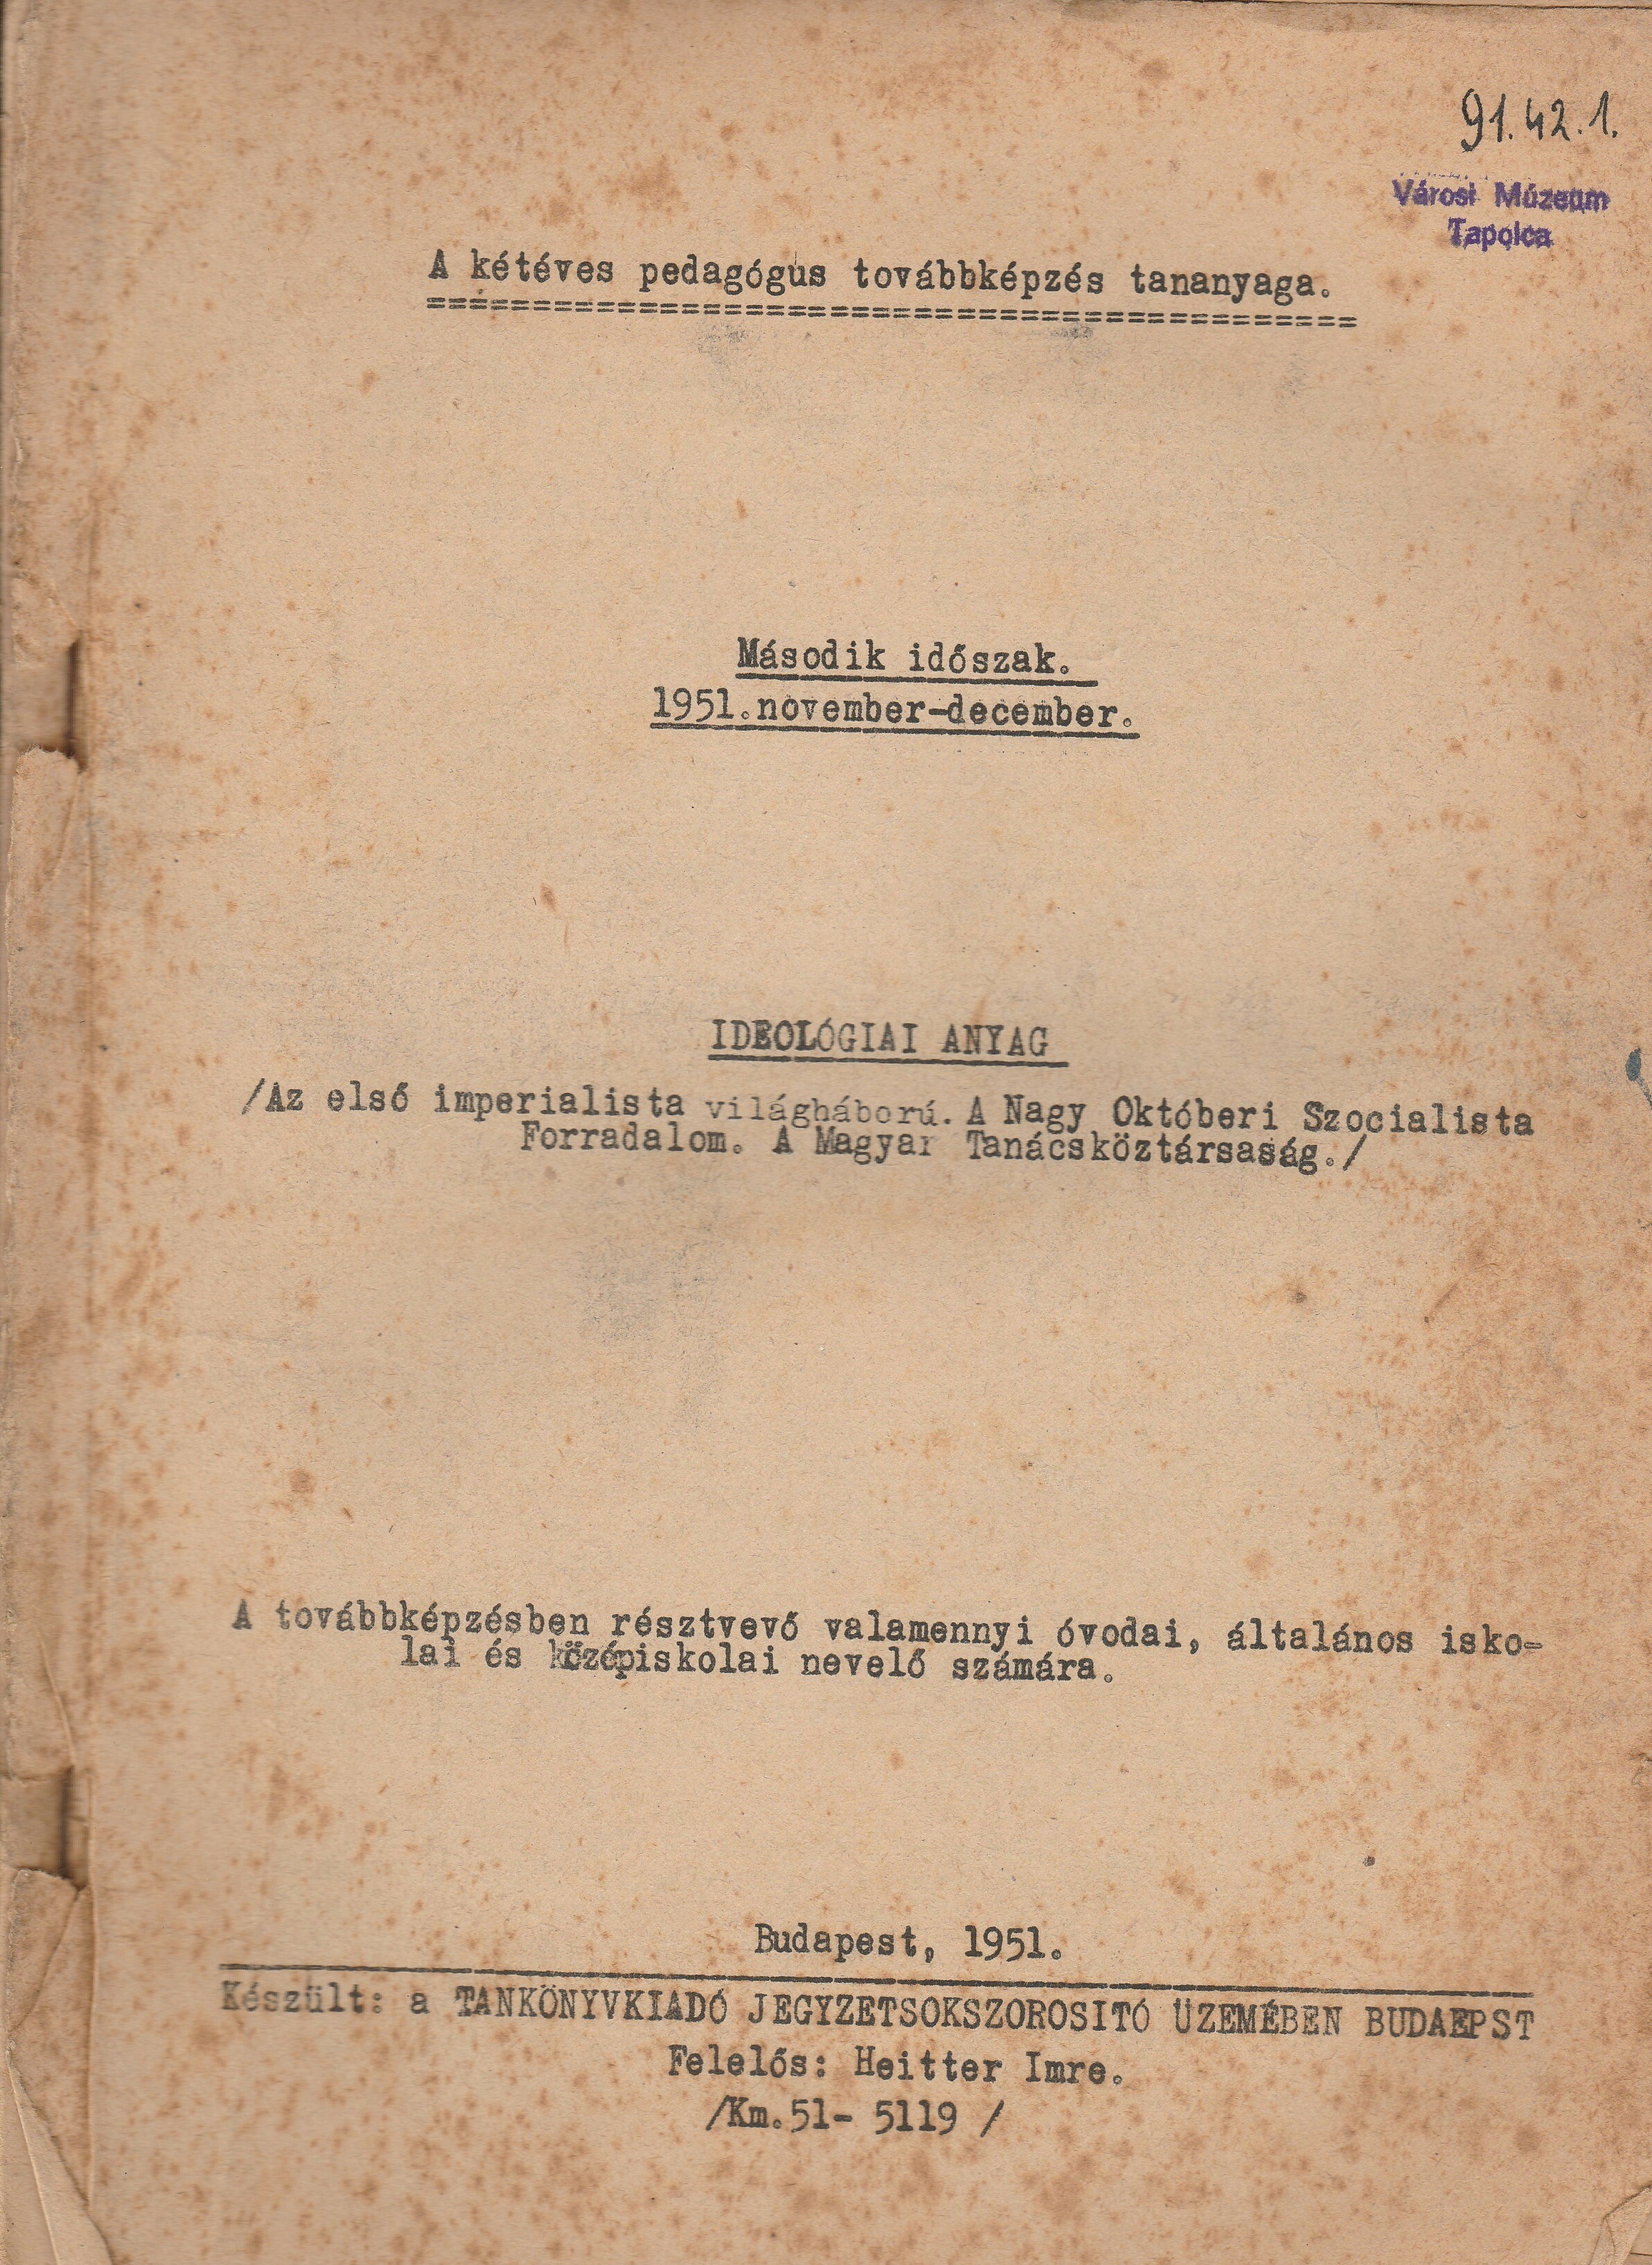 Ideológiai továbbképzés anyaga 1951-ből (Tapolcai Városi Múzeum CC BY-NC-SA)